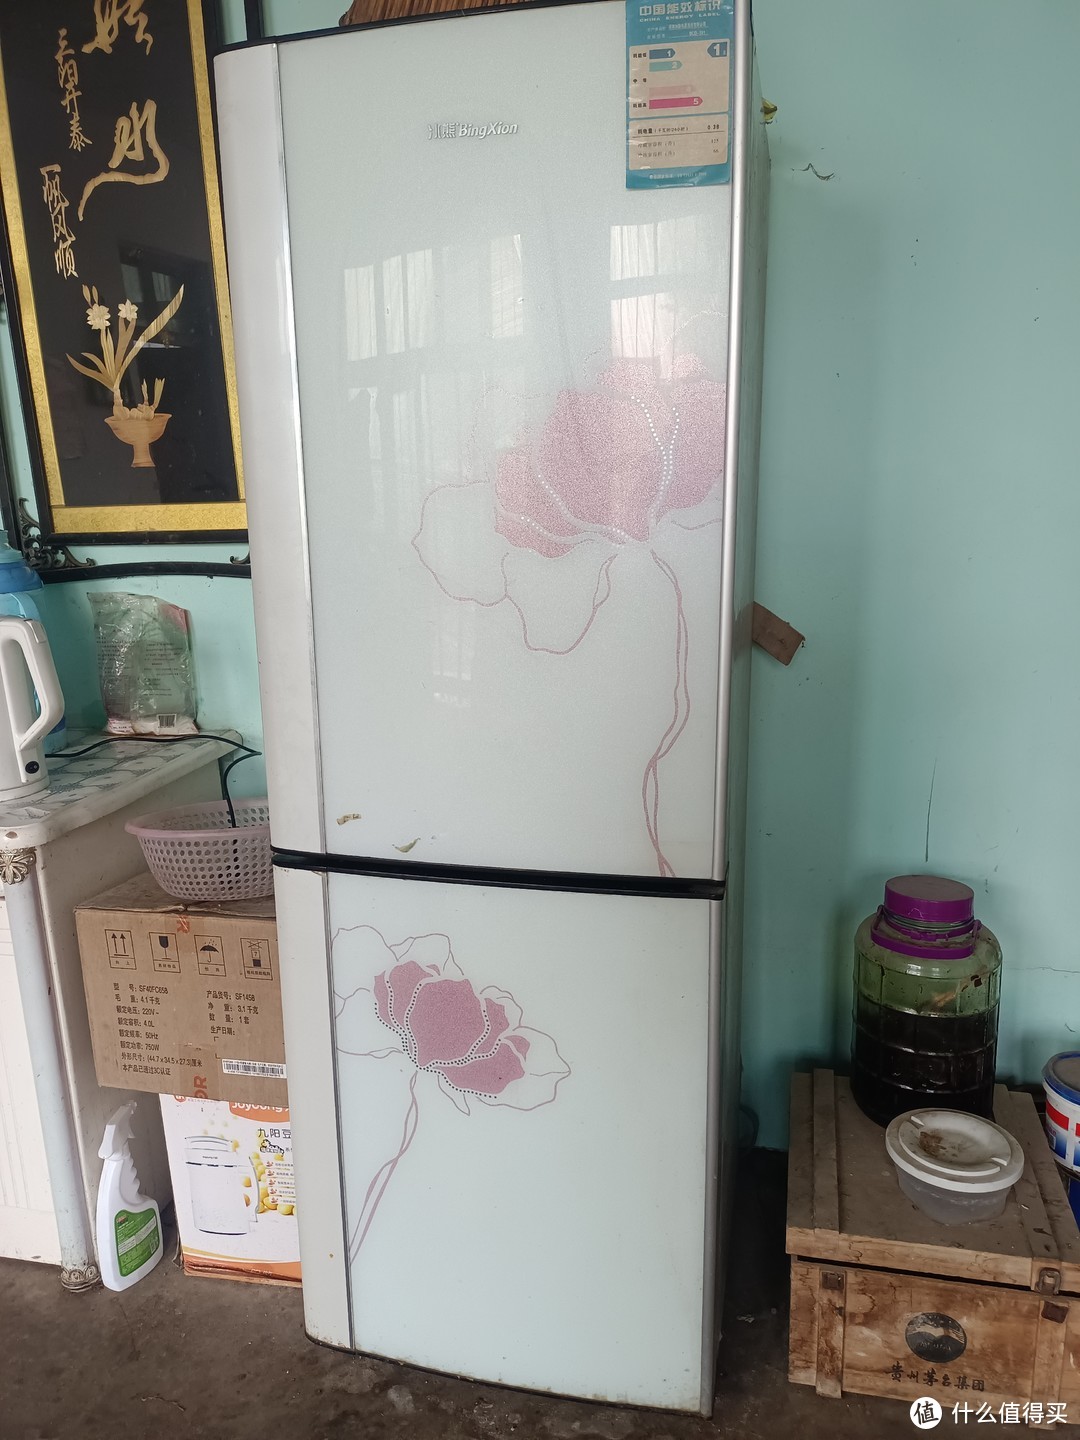 老家用了很多年的冰箱，节能减排的冰熊冰箱就是好用